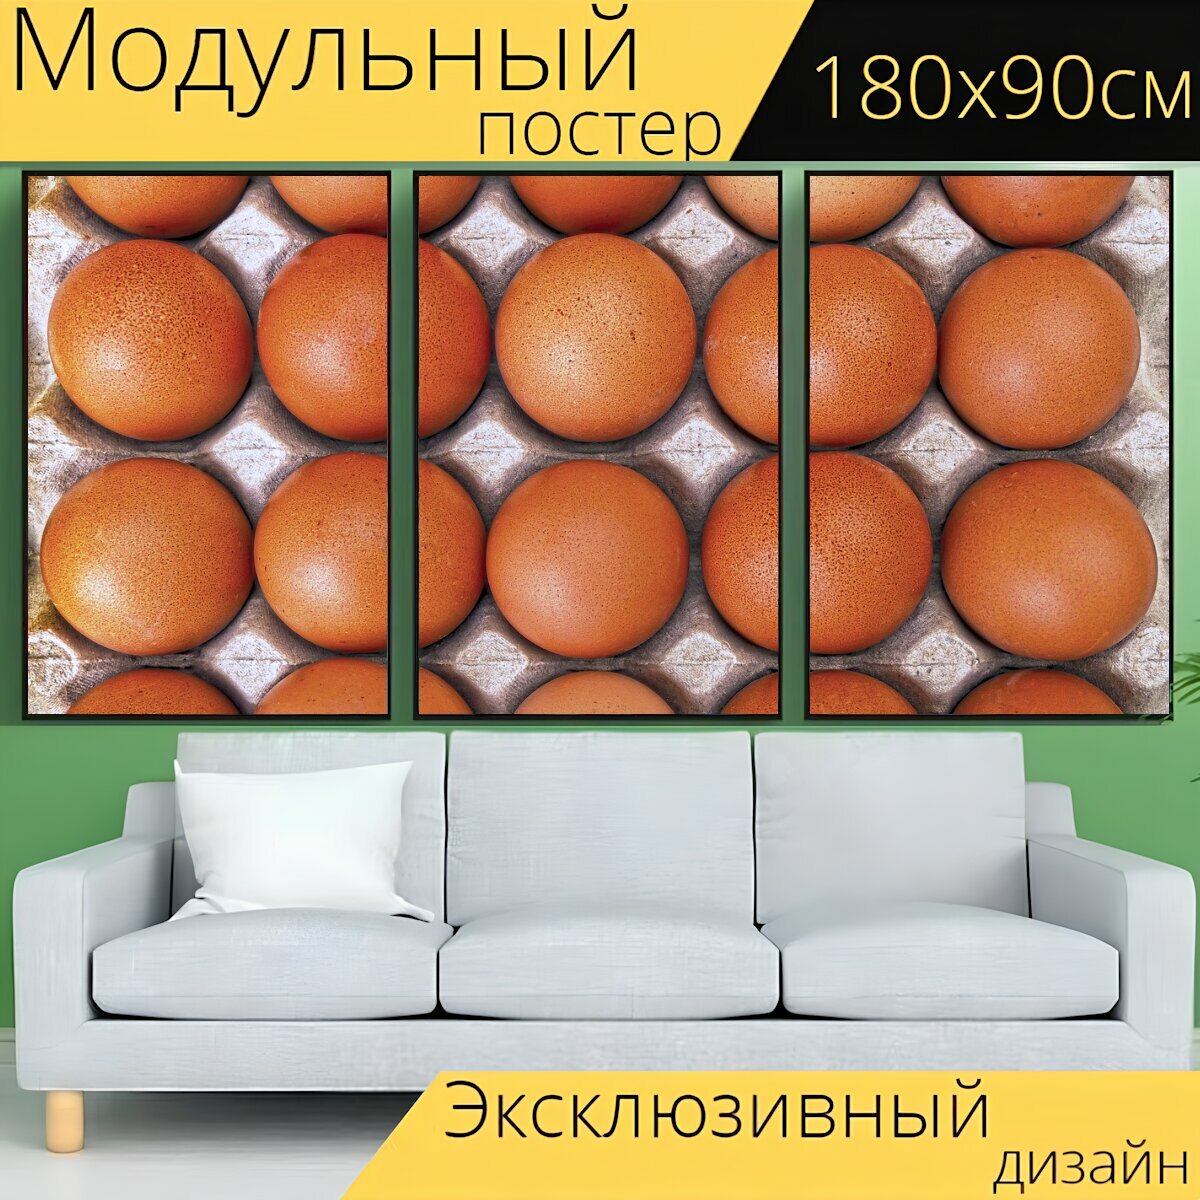 Модульный постер "Яйца, ассортимент яиц, свободные яйца" 180 x 90 см. для интерьера